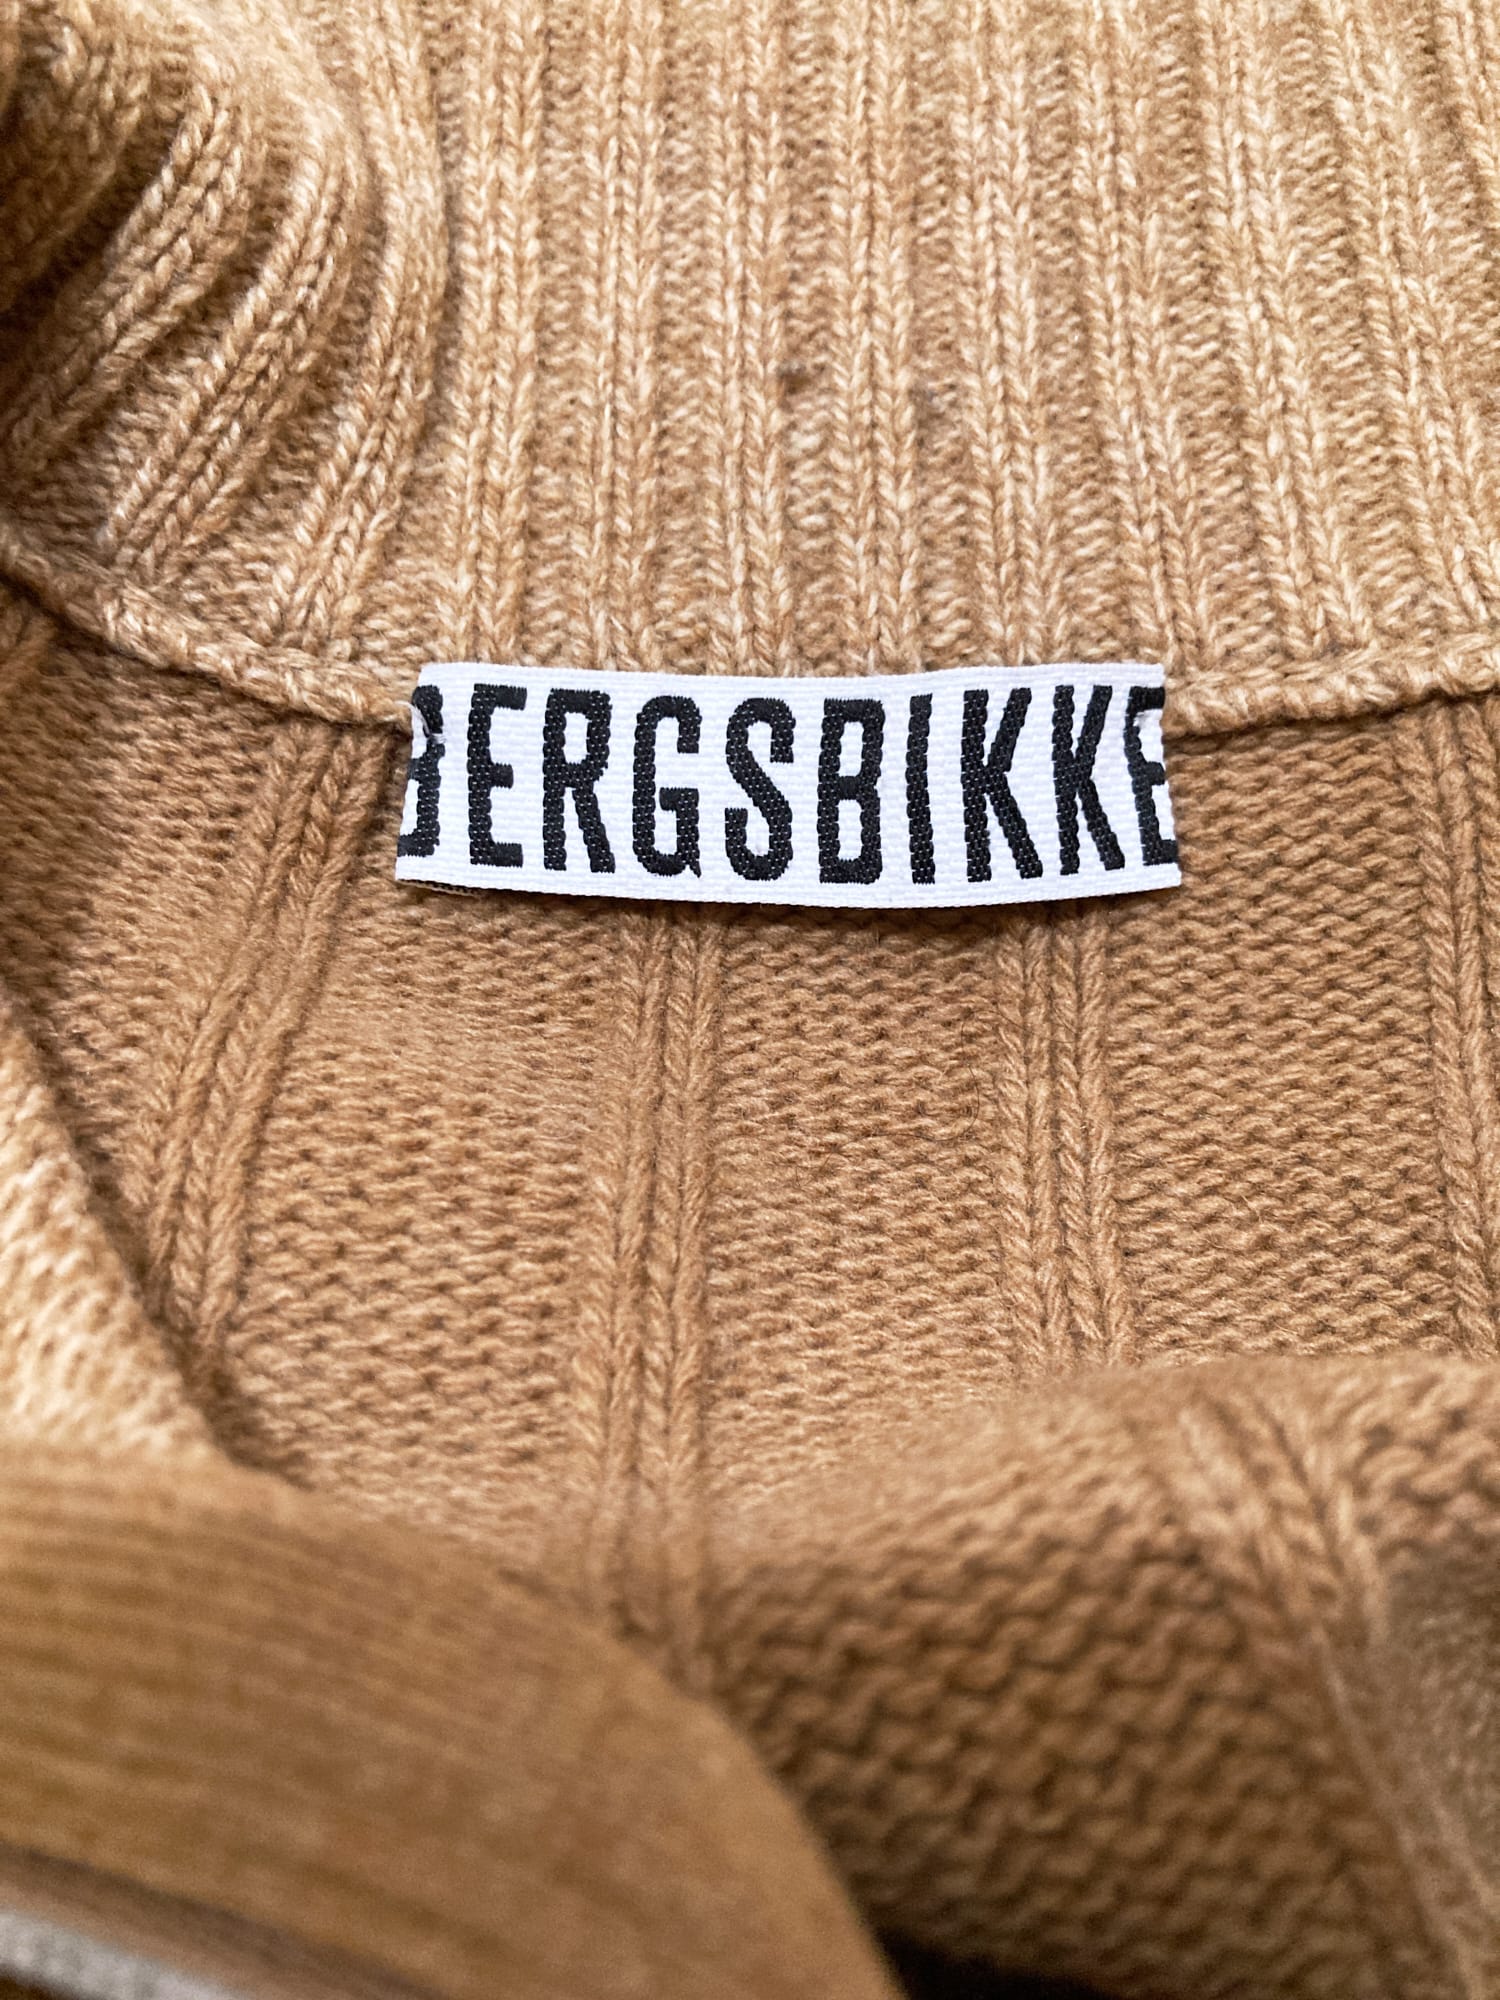 Dirk Bikkembergs 1990s 2000s beige brown wool knitted zip jacket - S